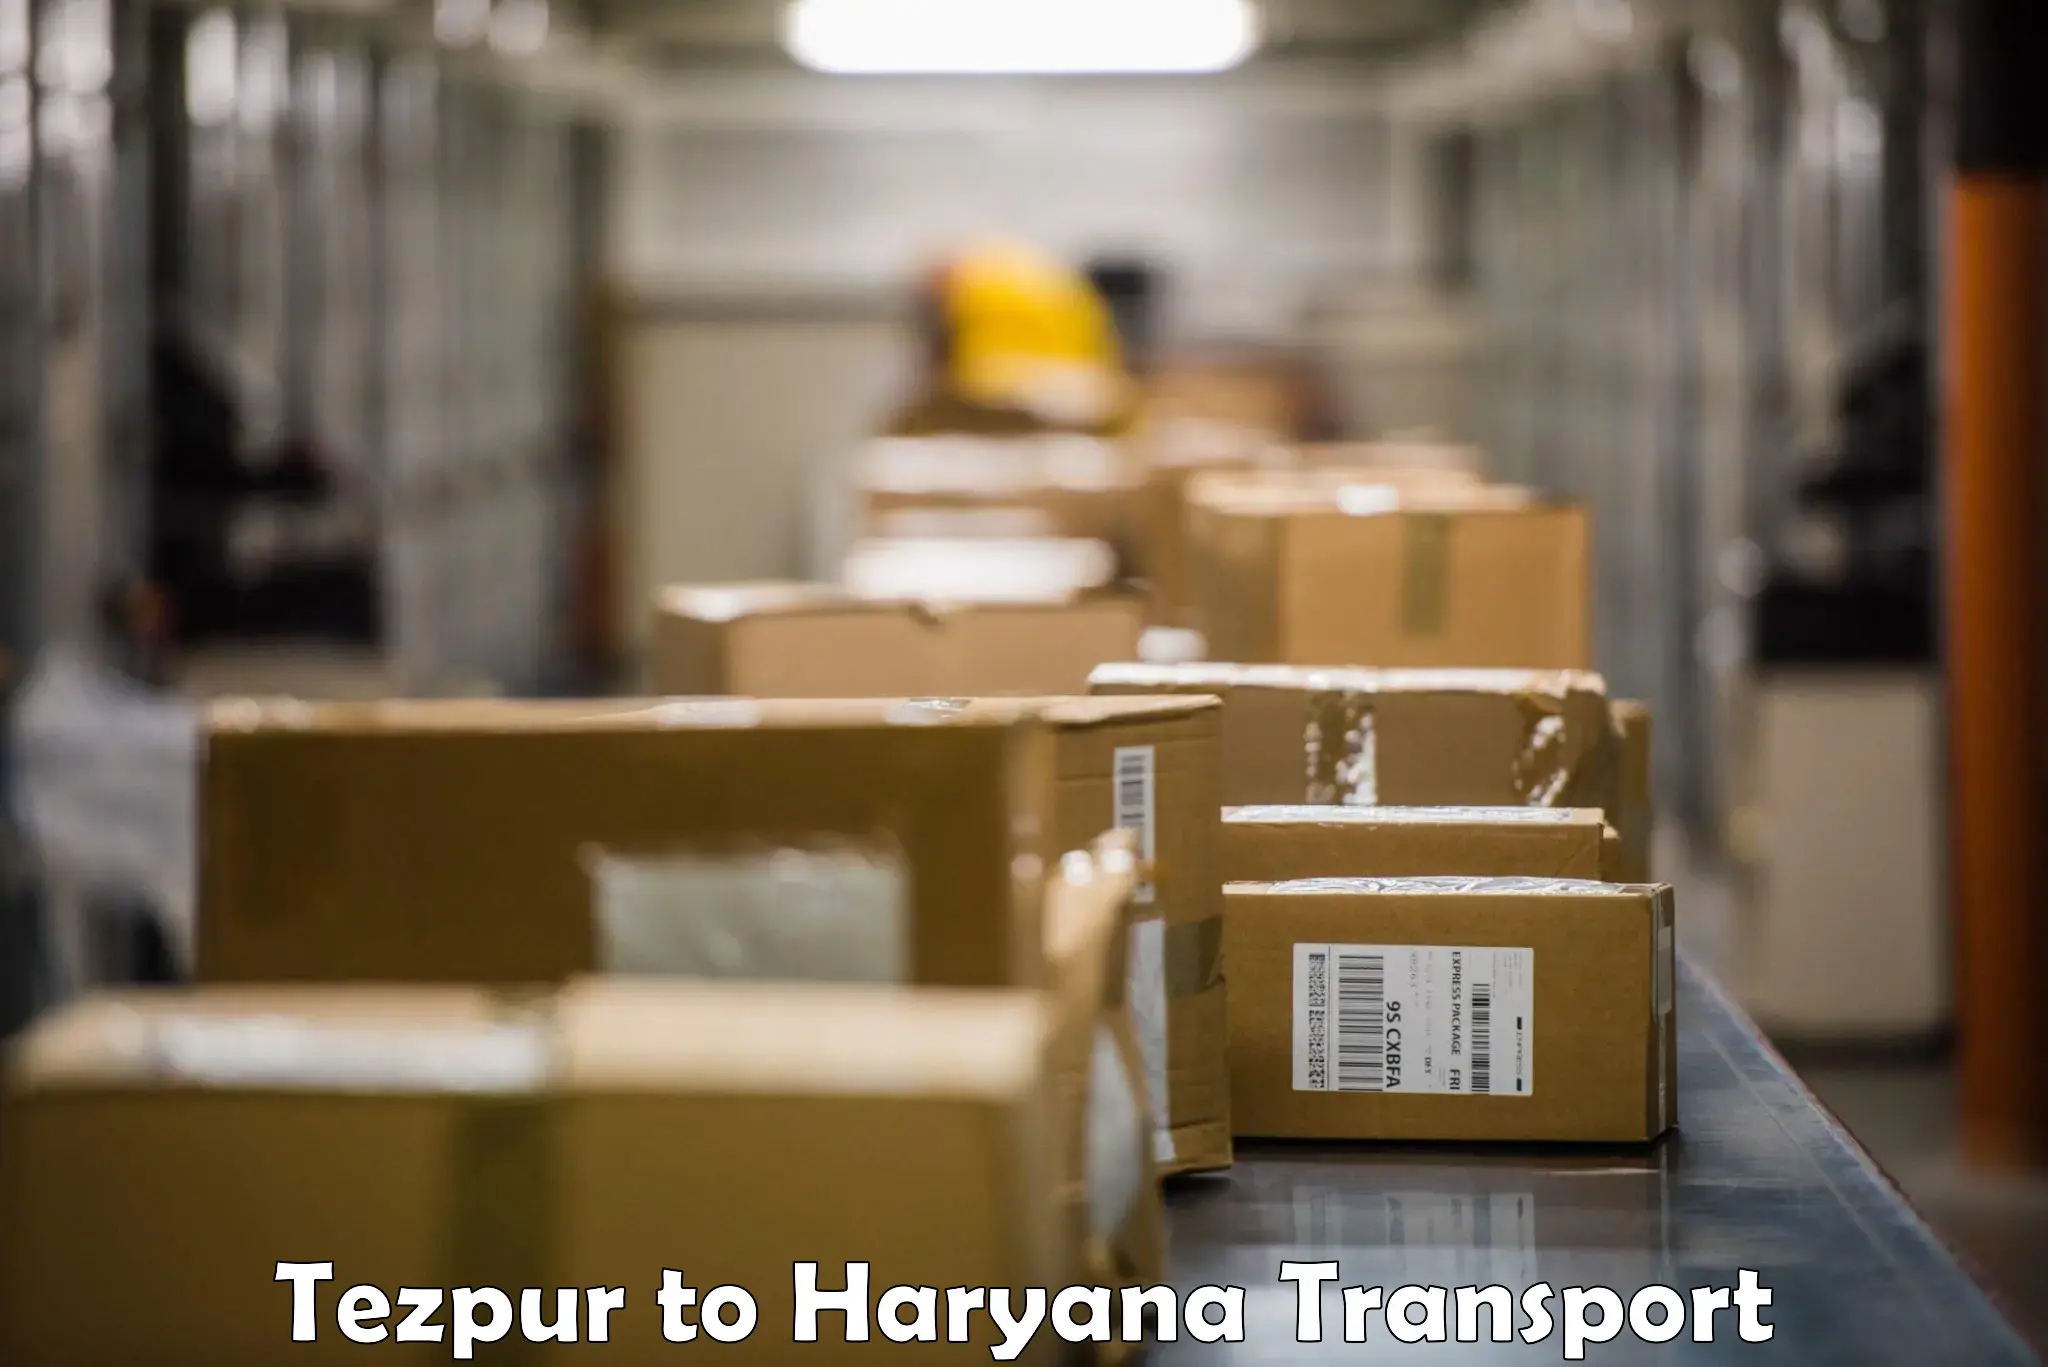 Delivery service Tezpur to Faridabad